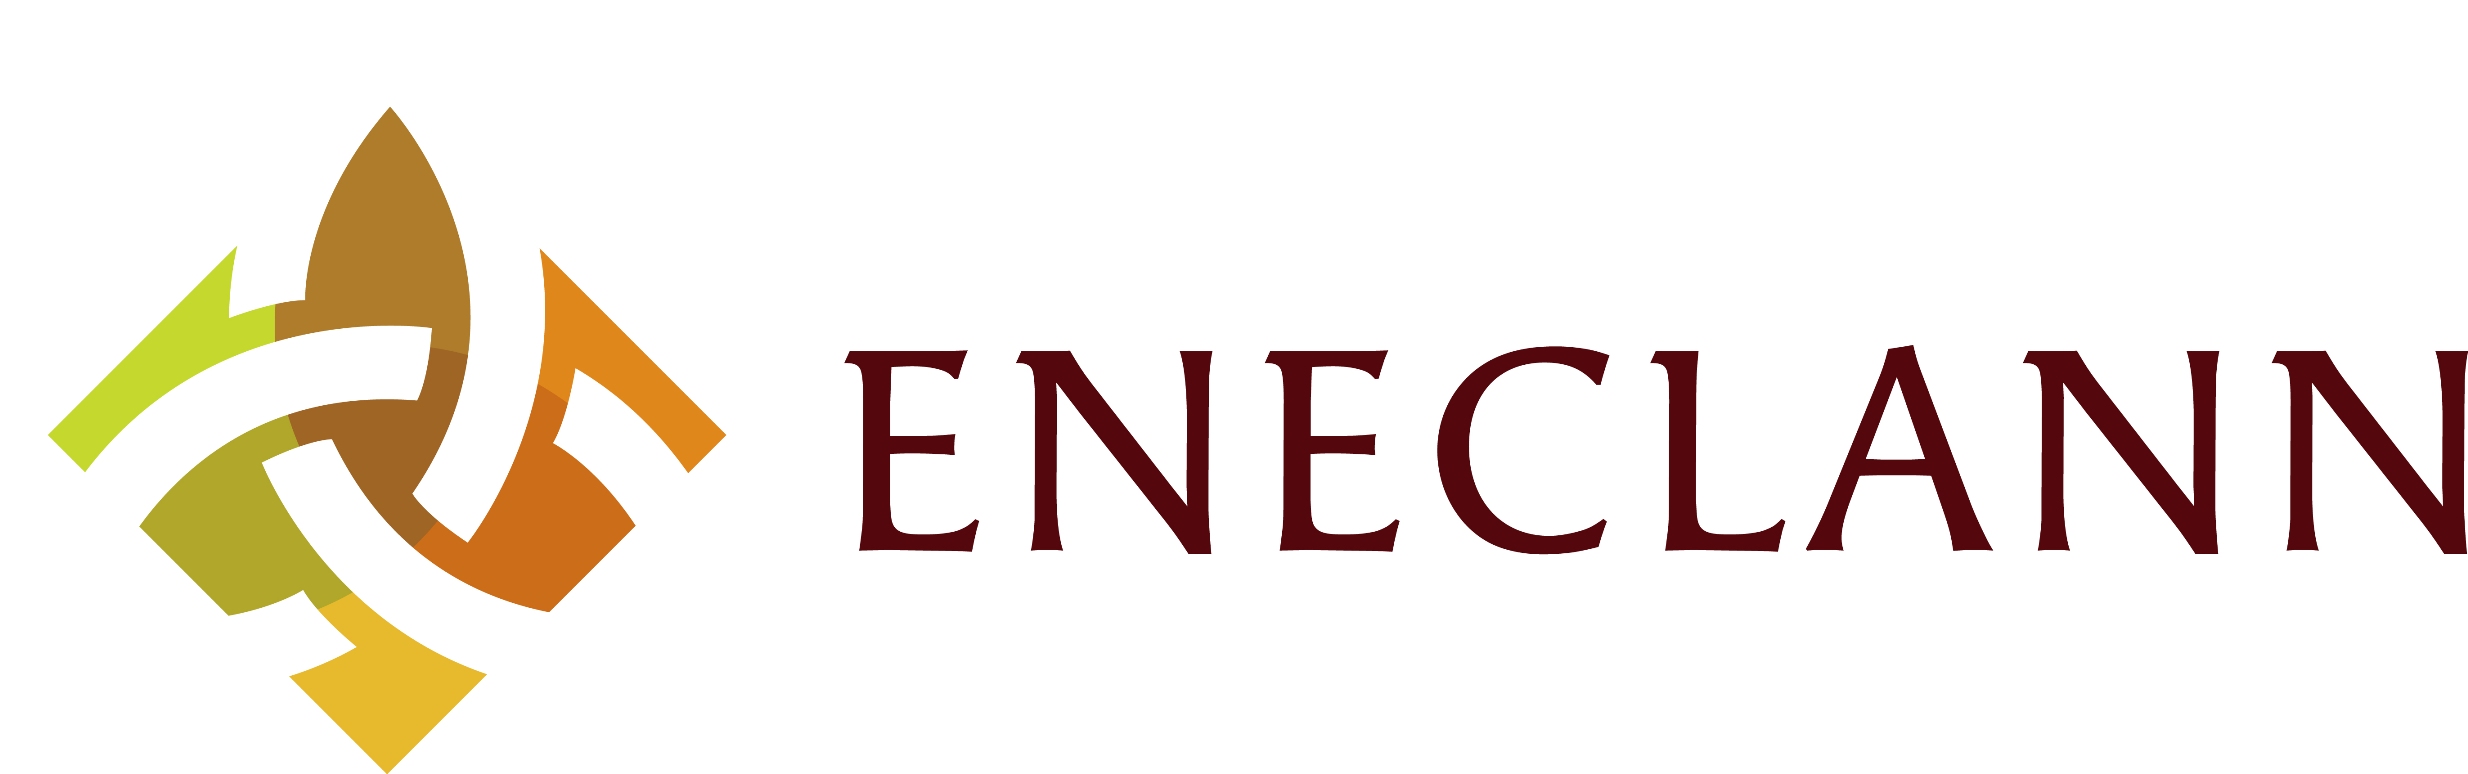 New_Eneclann_Logo-2011.jpg